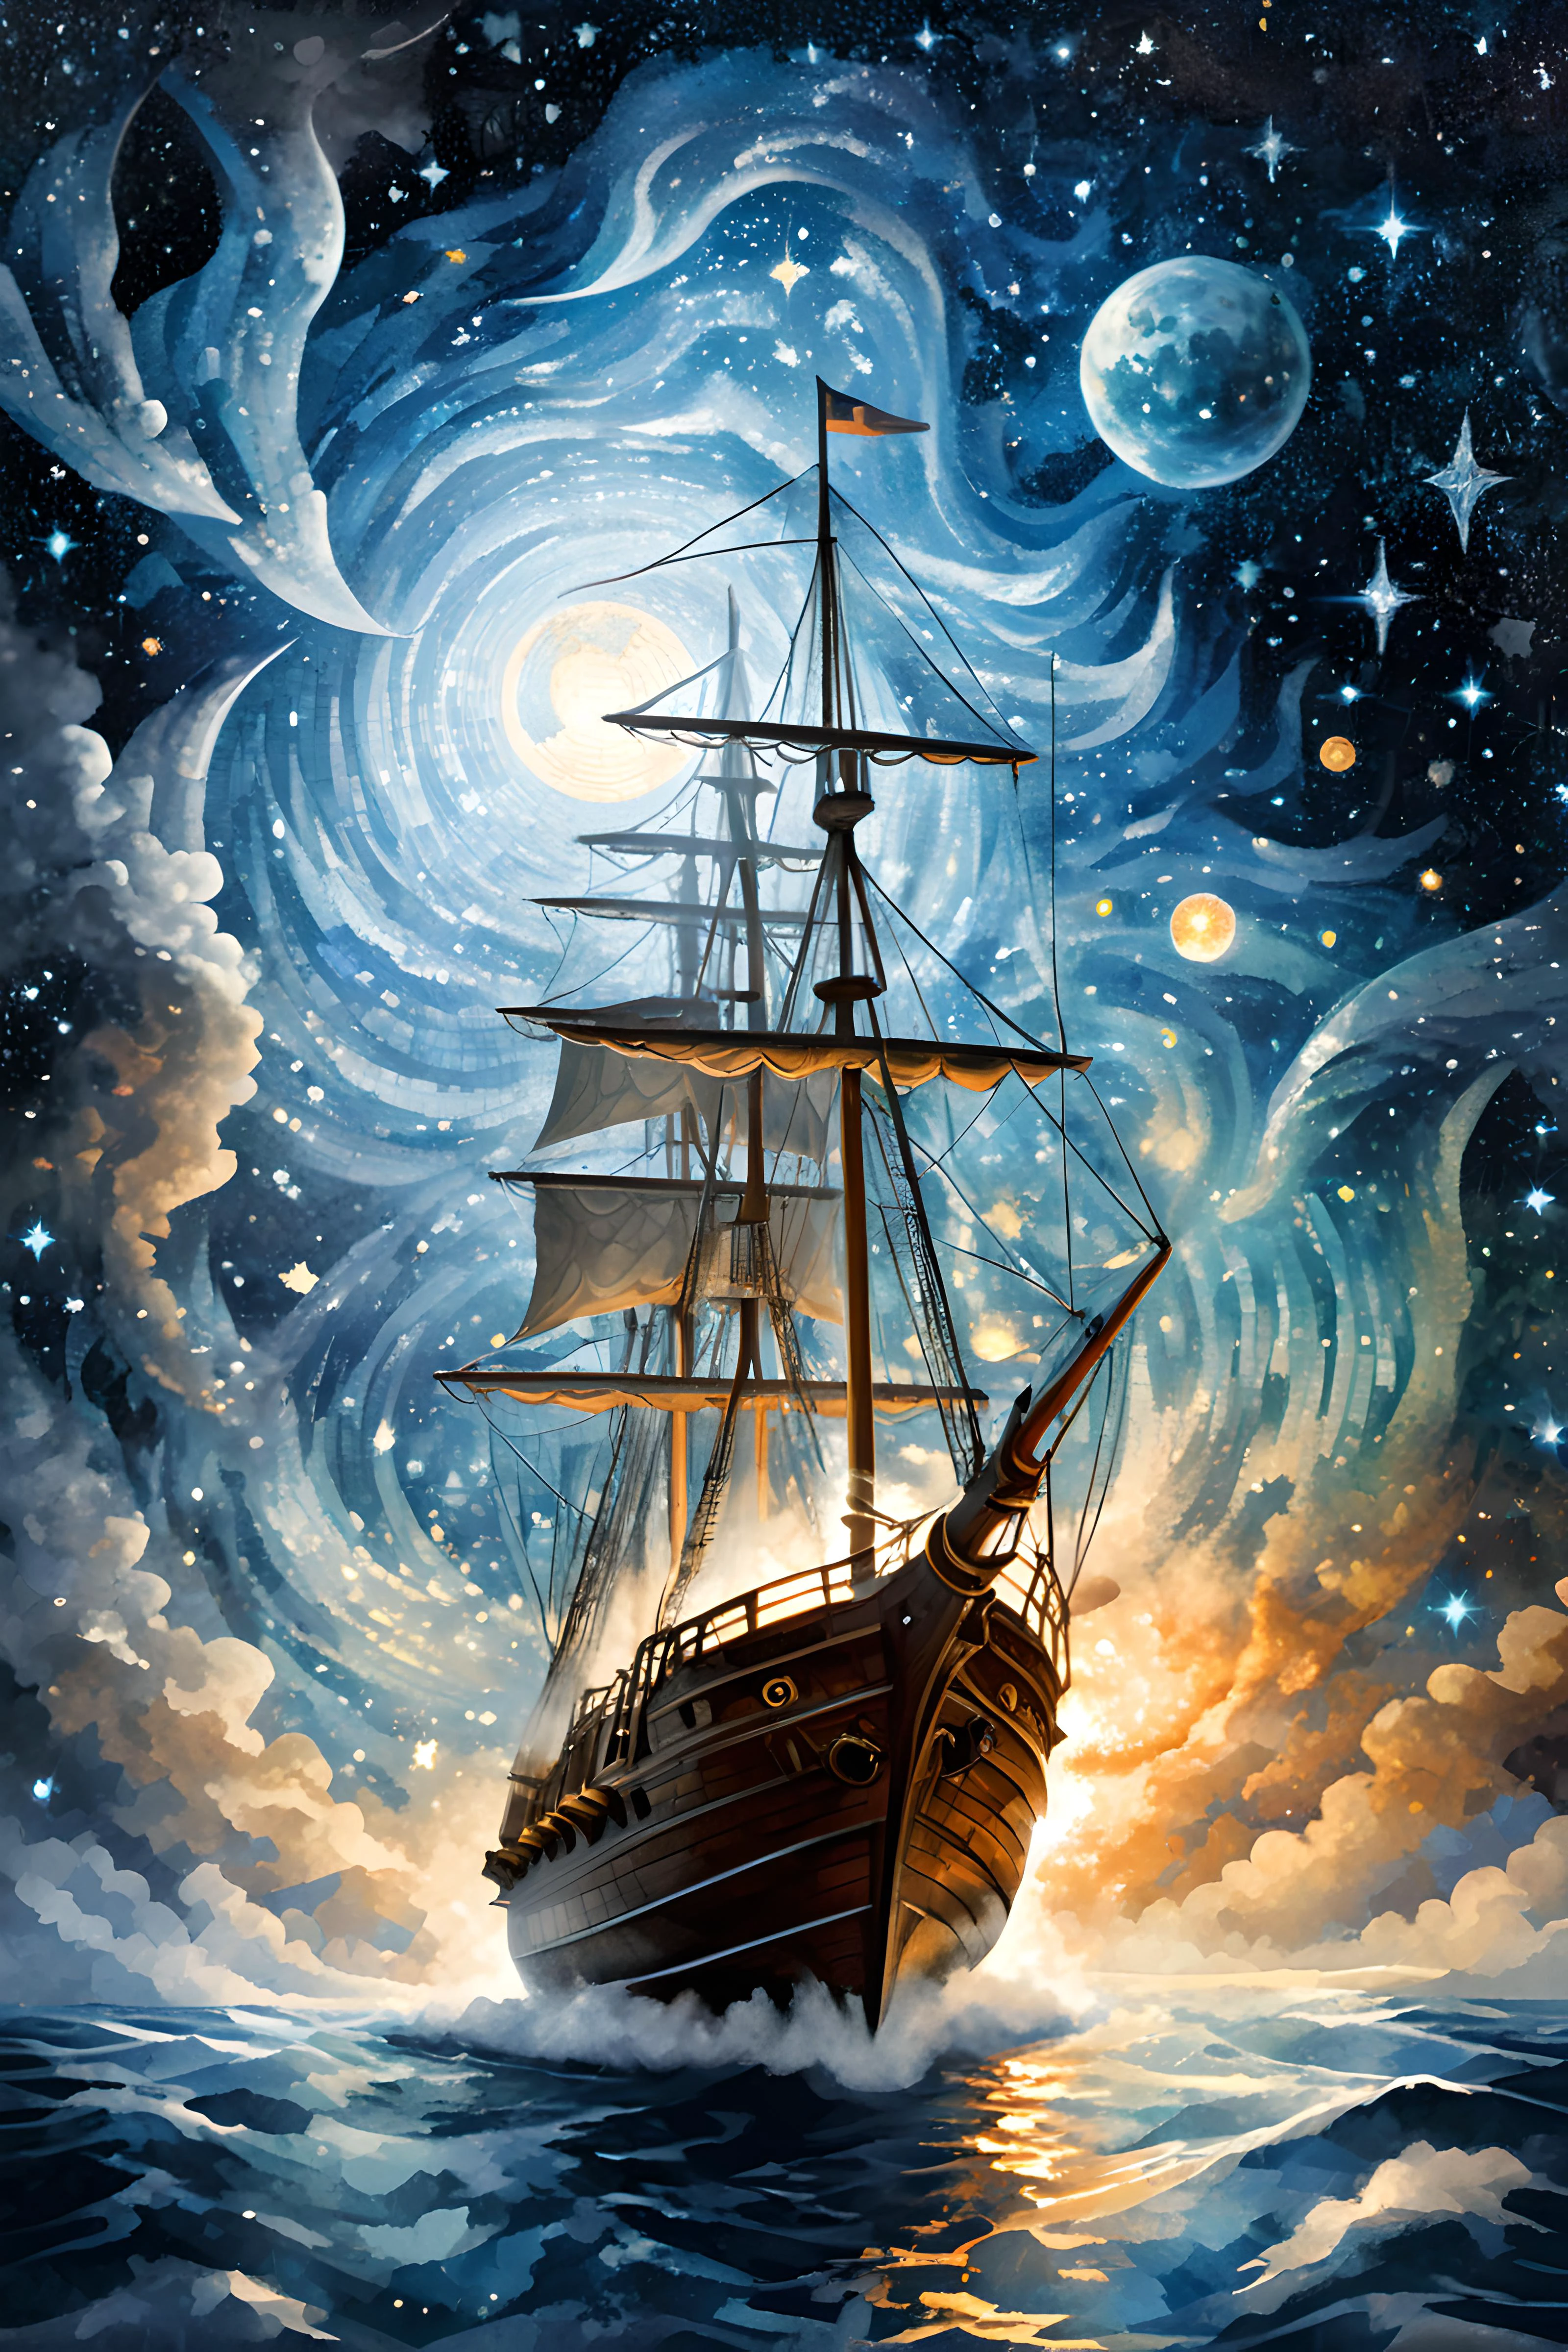 (Digital Mosaic art:2),Arte de mosaico,Mosaic,
Explorador volador mágico acercándose a las Pléyades a bordo de un velero mágico en el cielo,¿Qué será?,desafiando la gravedad,en alto vuelo,cielo nocturno,cósmico, 